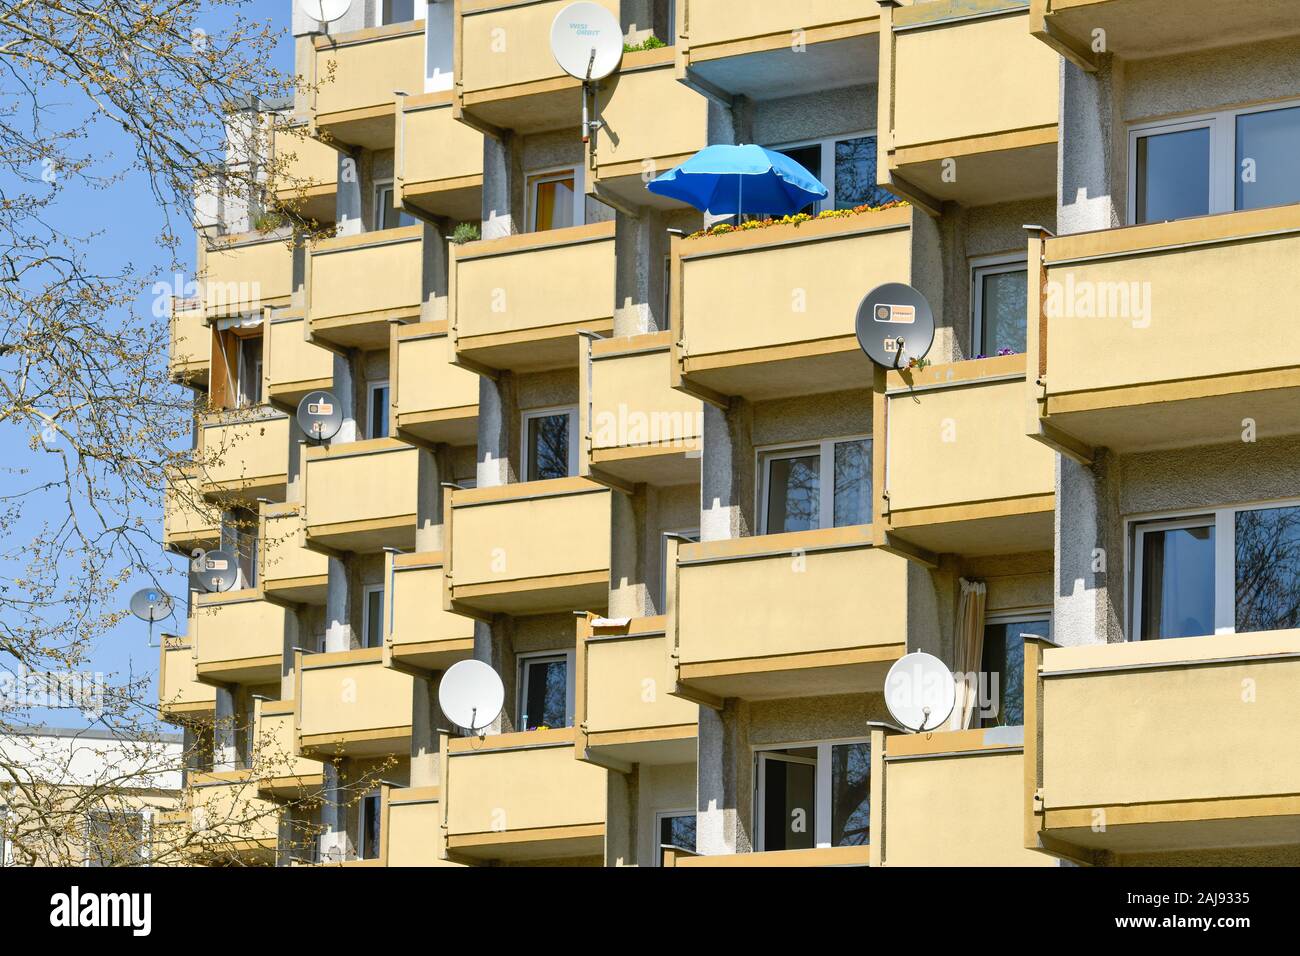 Wohnhäuser, Schuckertdamm, Siemensstadt, Spandau, Berlin, Deutschland Stock Photo